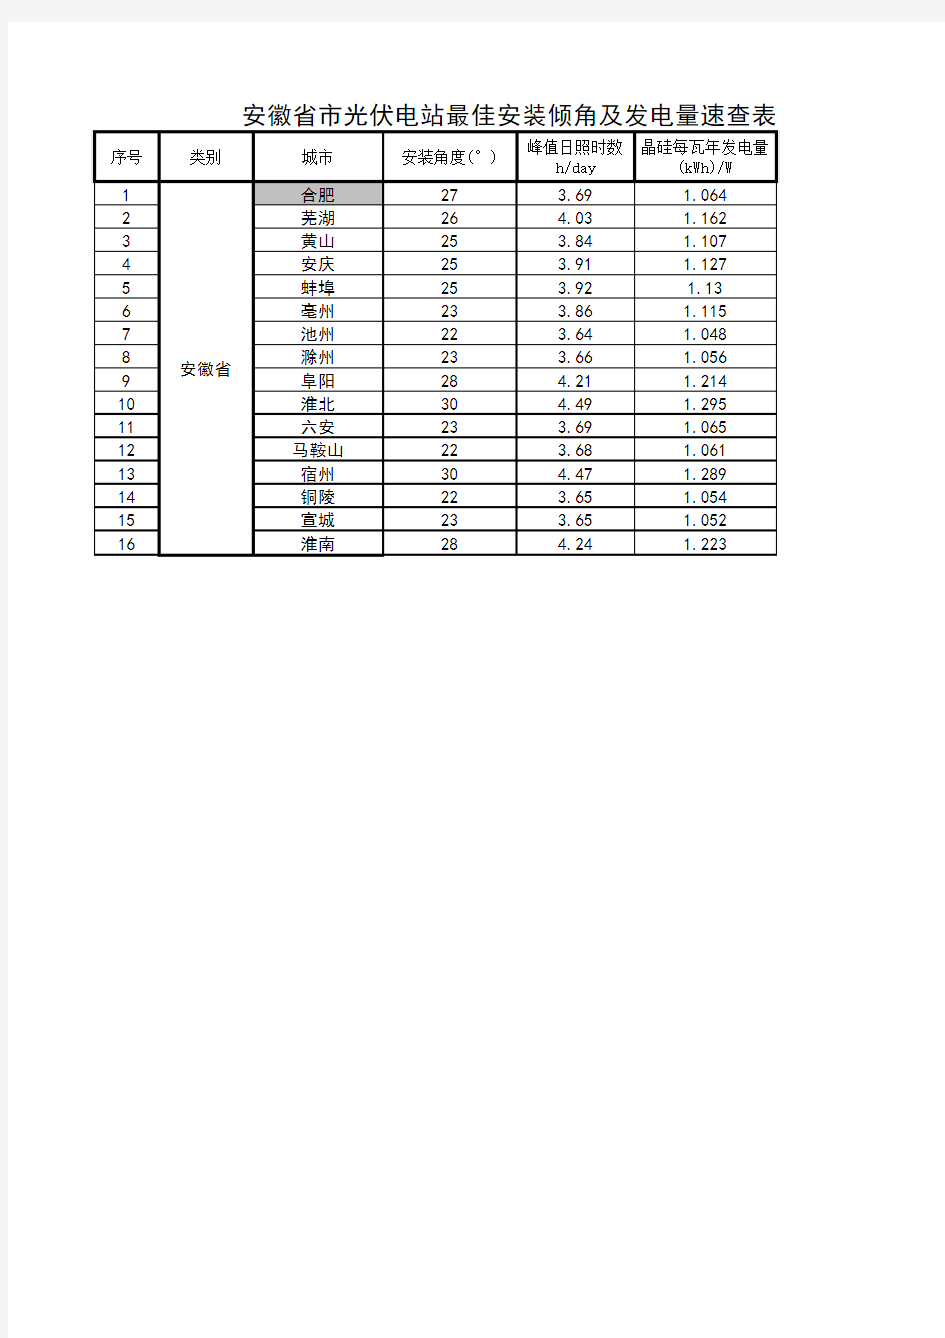 安徽省市光伏电站最佳安装倾角及发电量速查表(1)